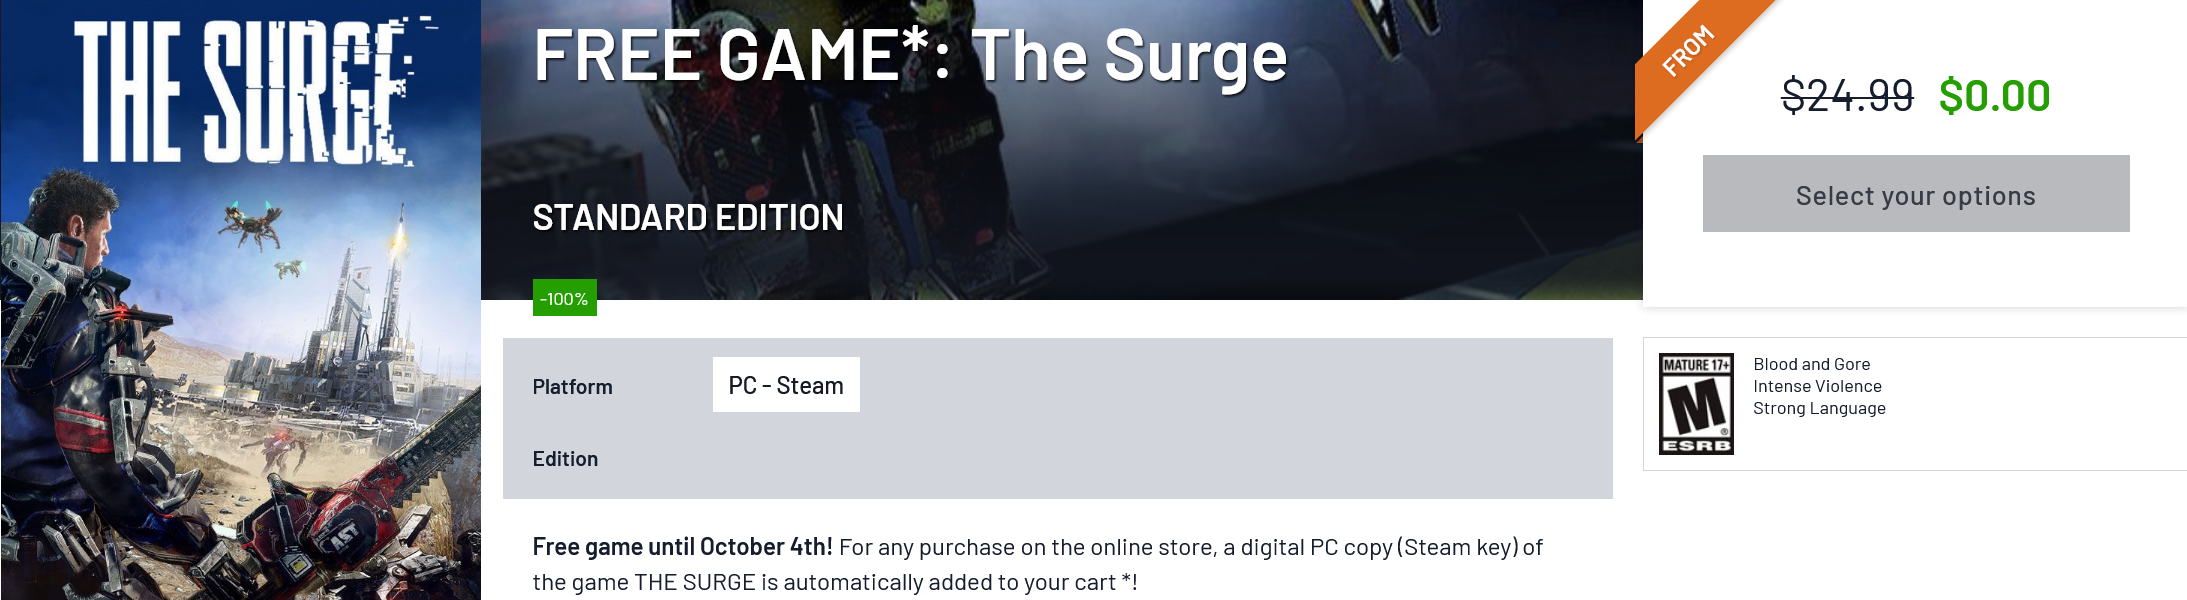 Screenshot 2021-09-28 at 21-54-34 FREE GAME The Surge.png